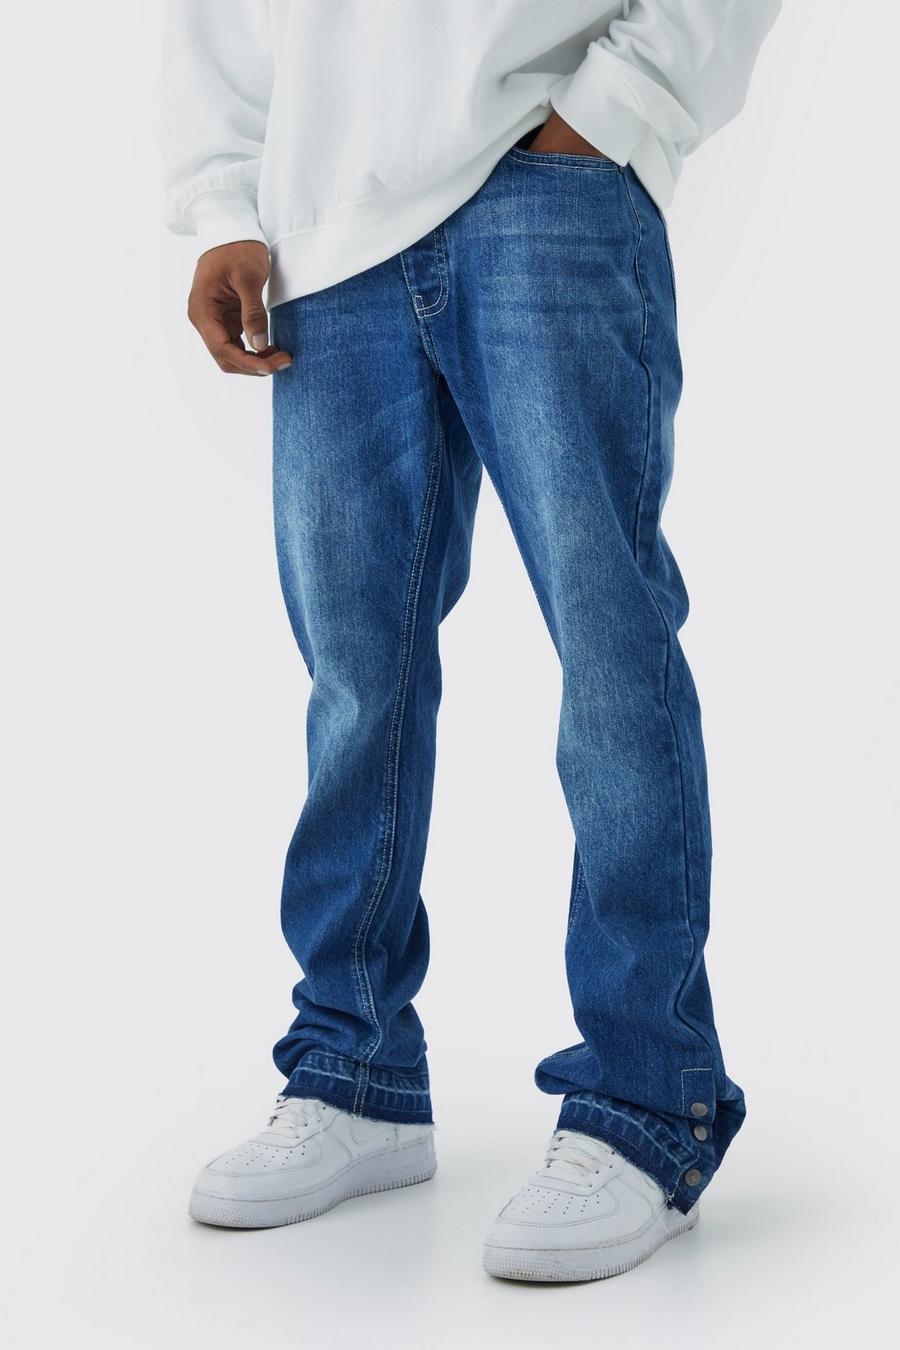 Jeans Slim Fit in denim rigido a zampa con bottoni a pressione sul fondo, Antique blue